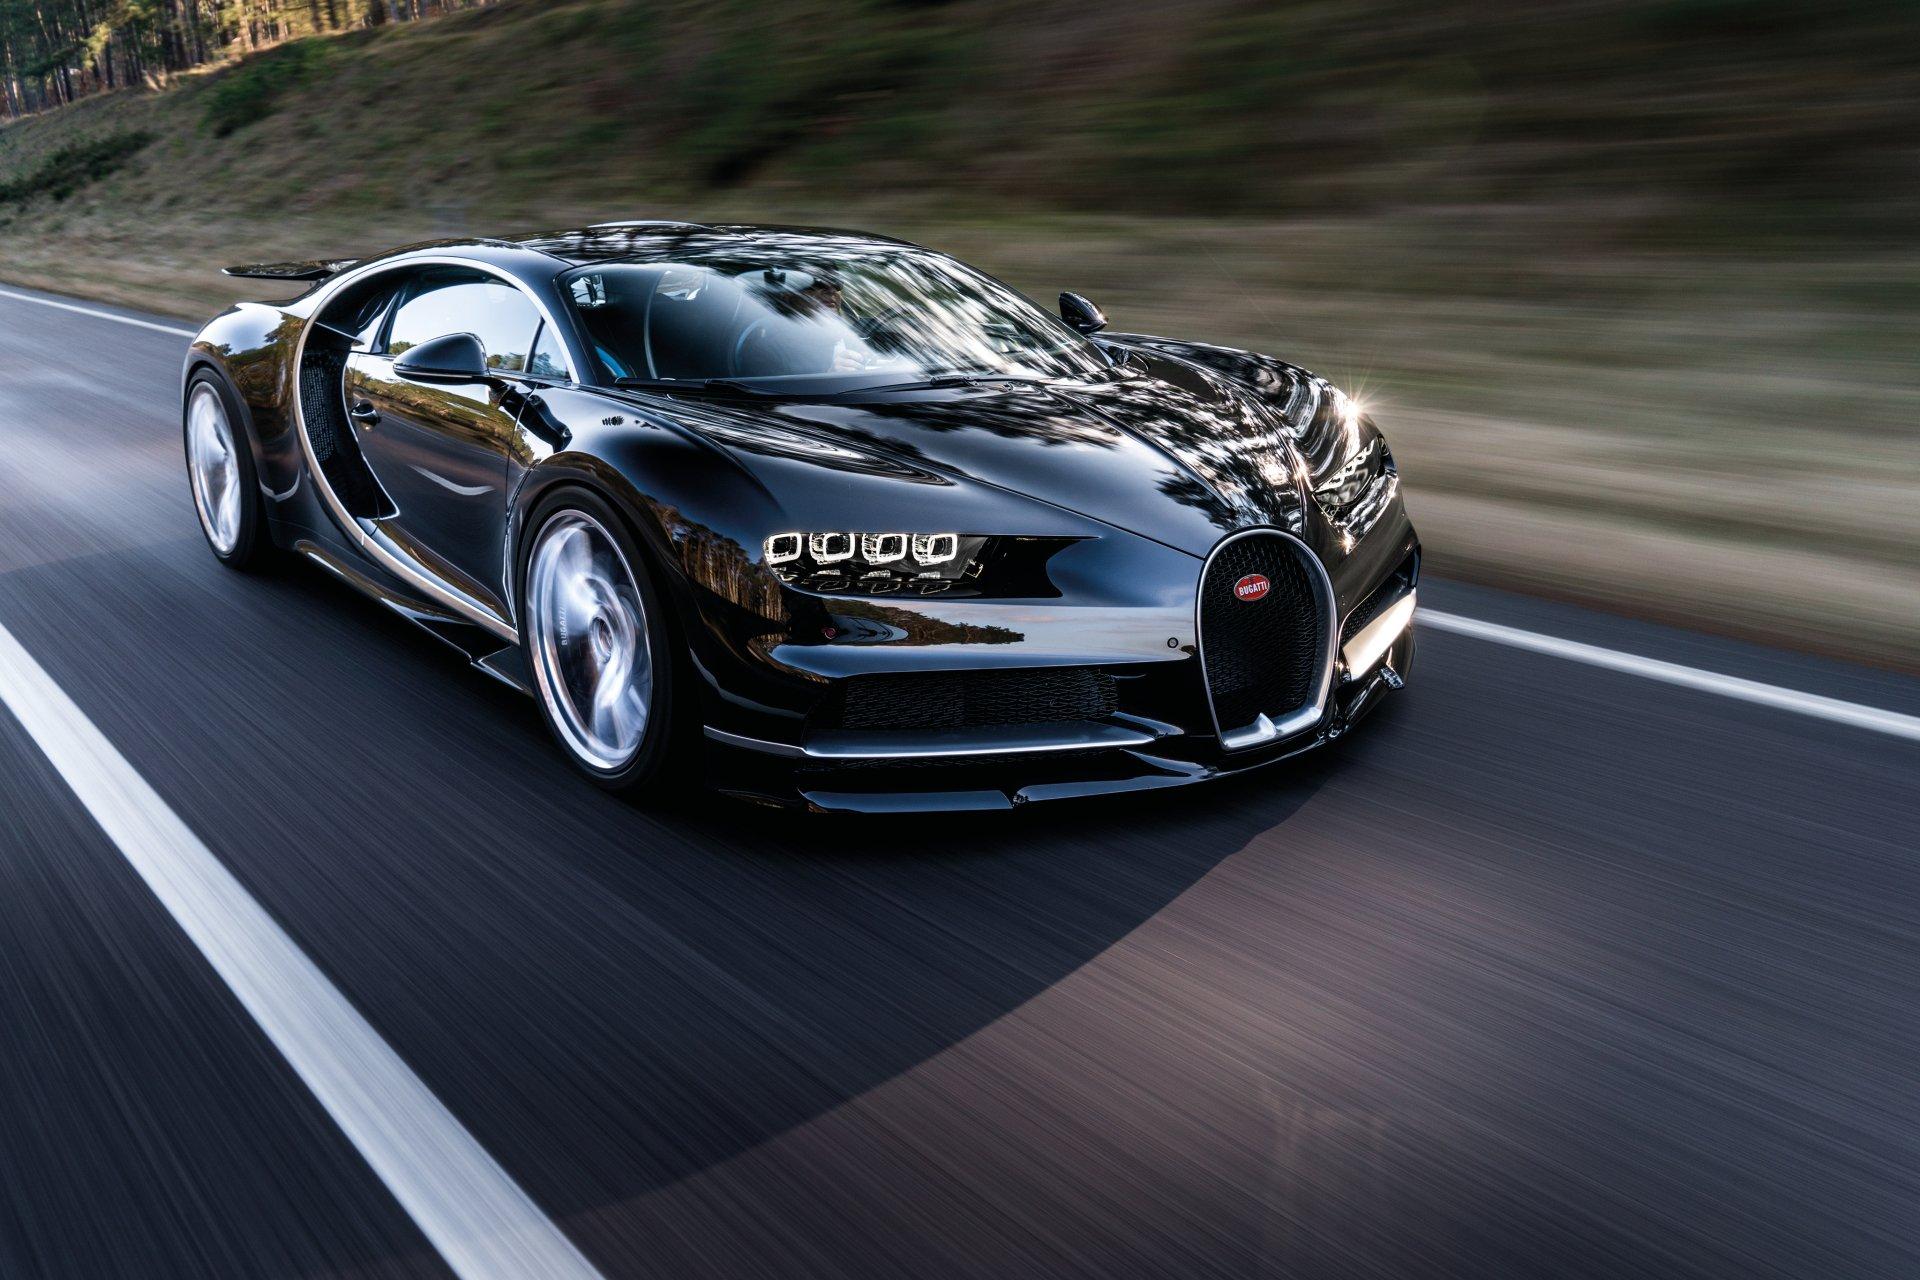 Bugatti Chiron HD Wallpaper And Background